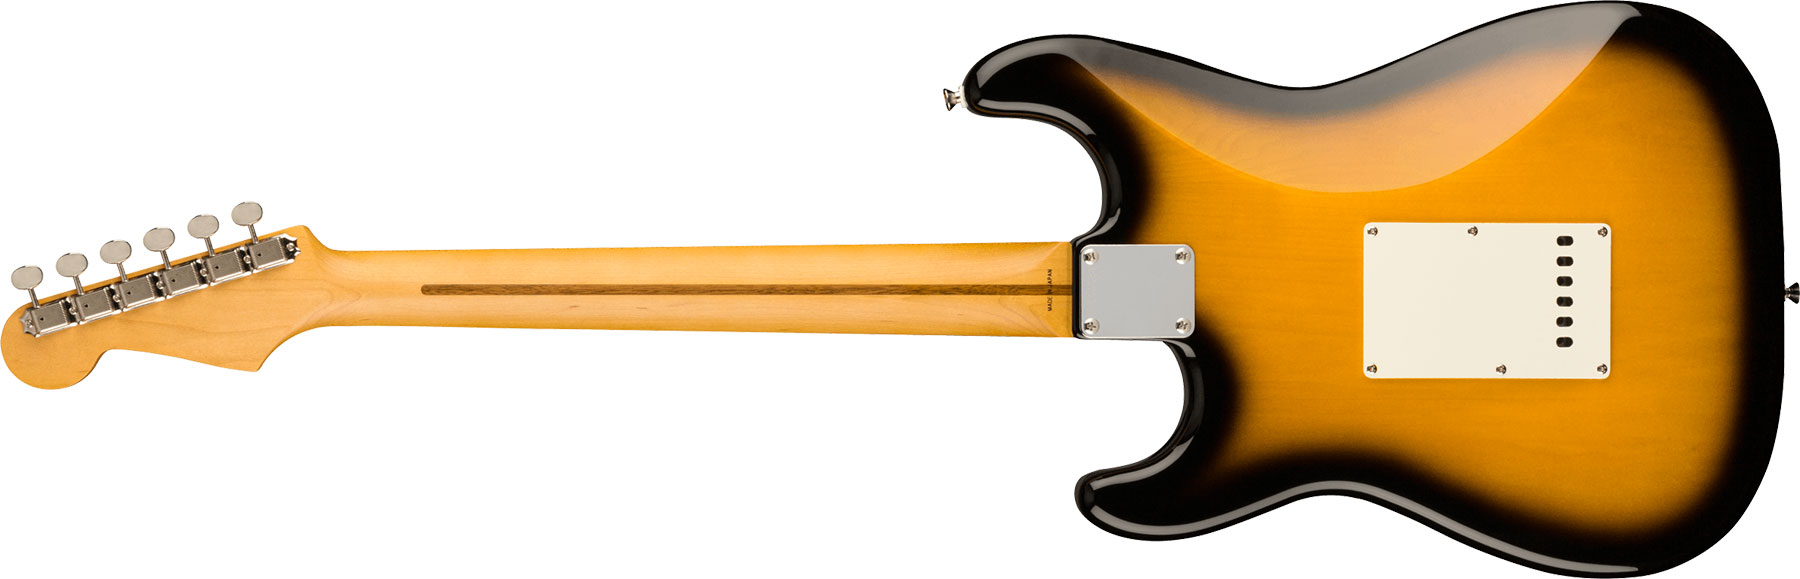 Fender Strat Jv Modified '50s Jap Hss Trem Mn - 2-color Sunburst - Str shape electric guitar - Variation 1